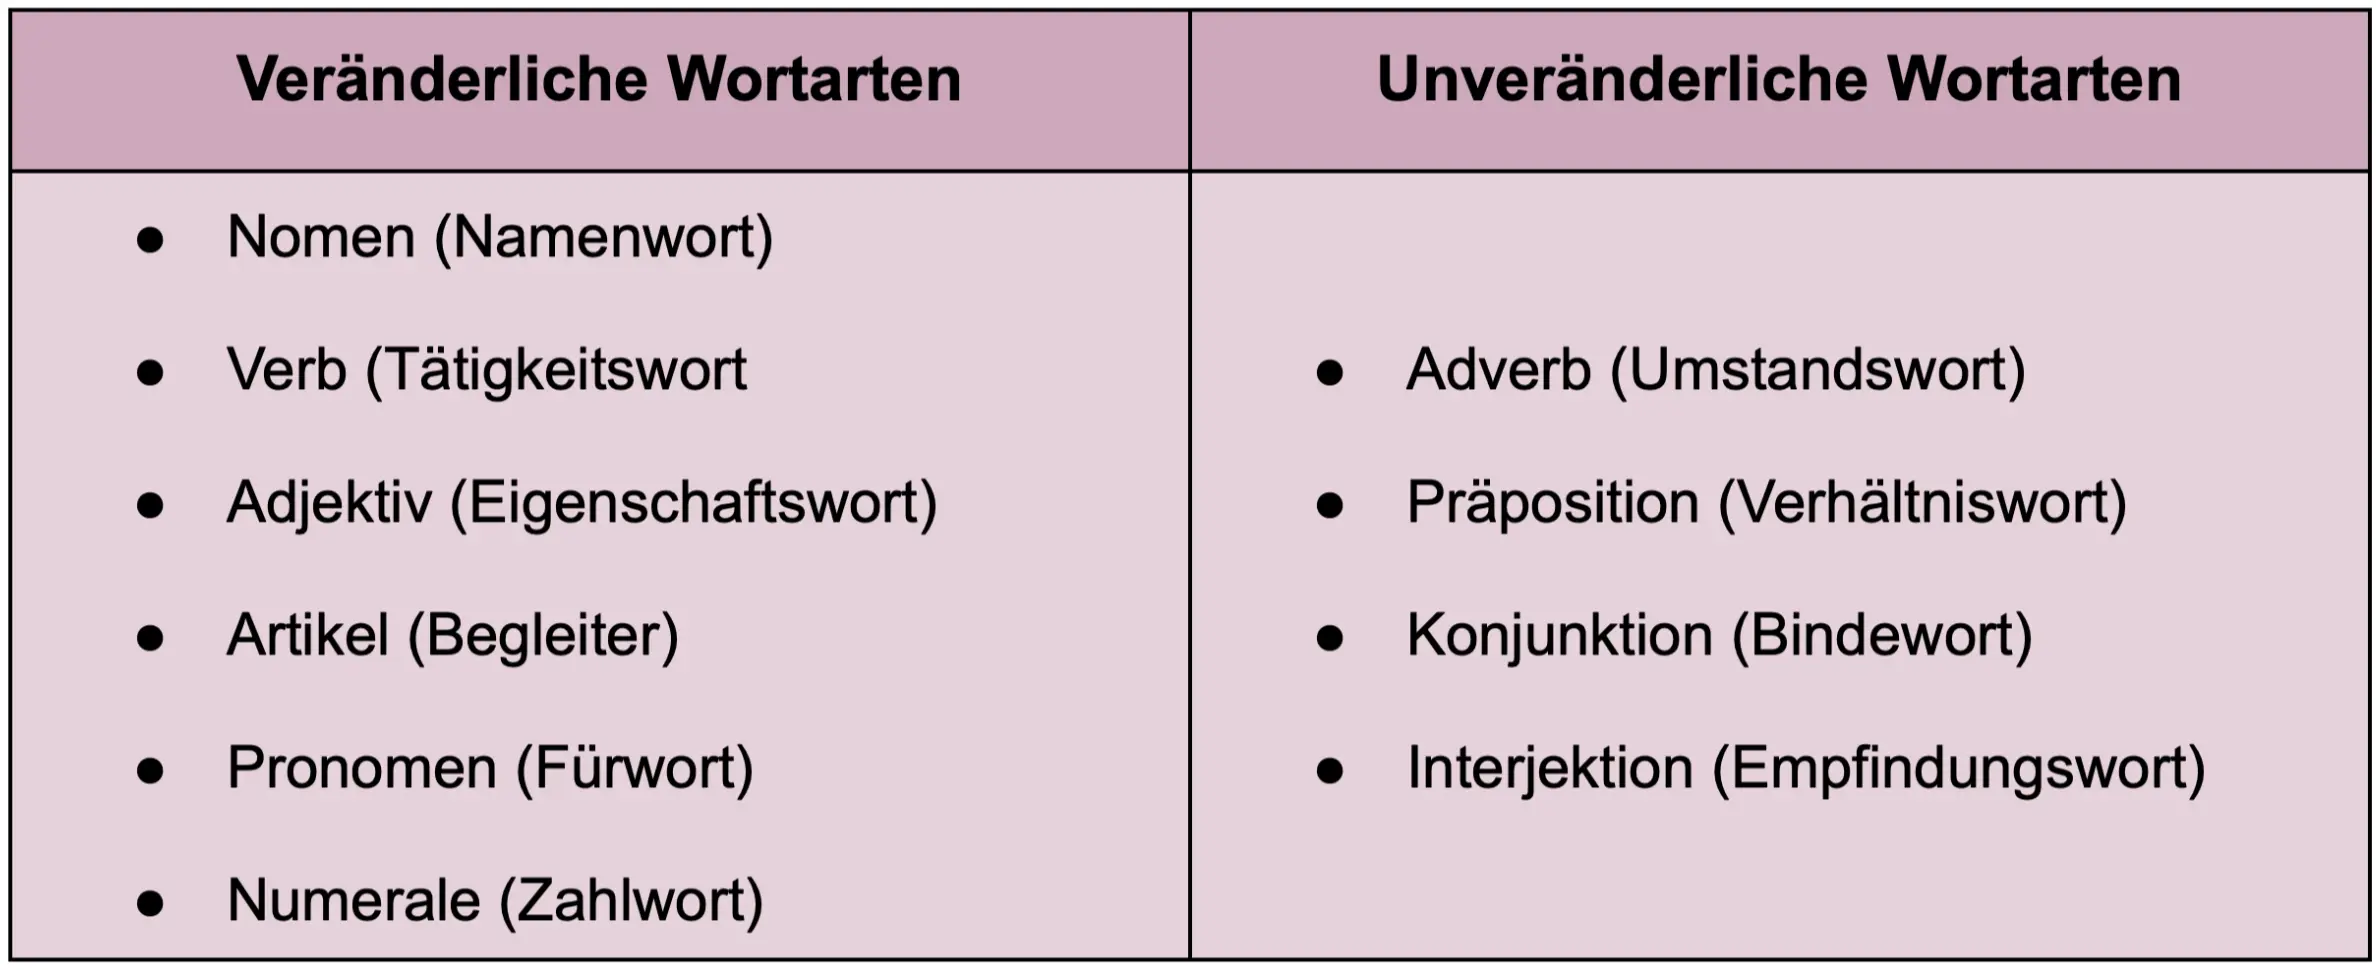 Tabelle über die veränderlichen und die unveränderlichen Wortarten